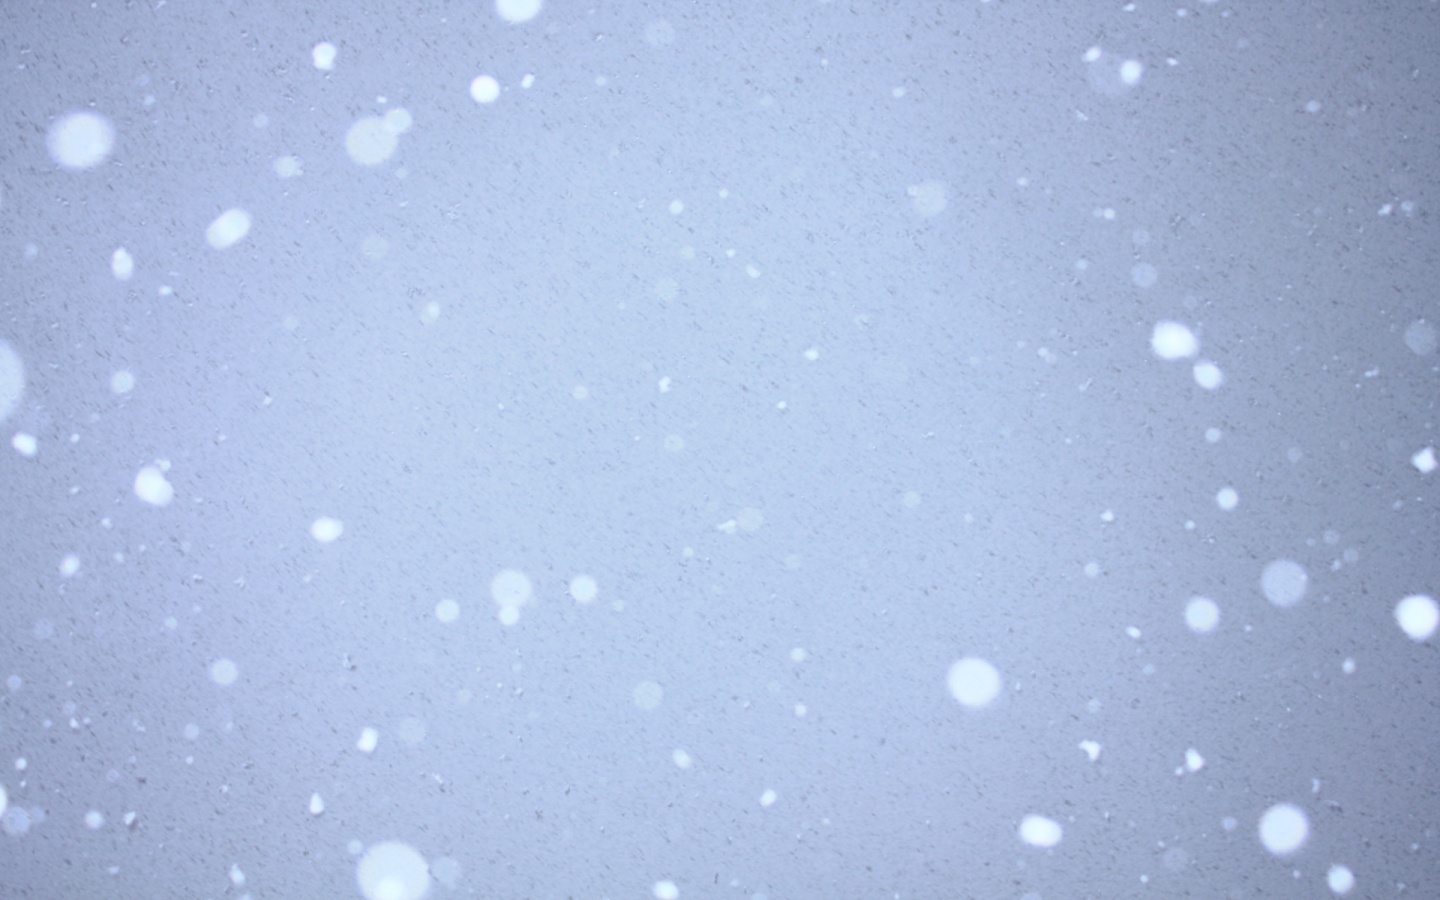 [49+] Animated Snow Falling Wallpaper - WallpaperSafari